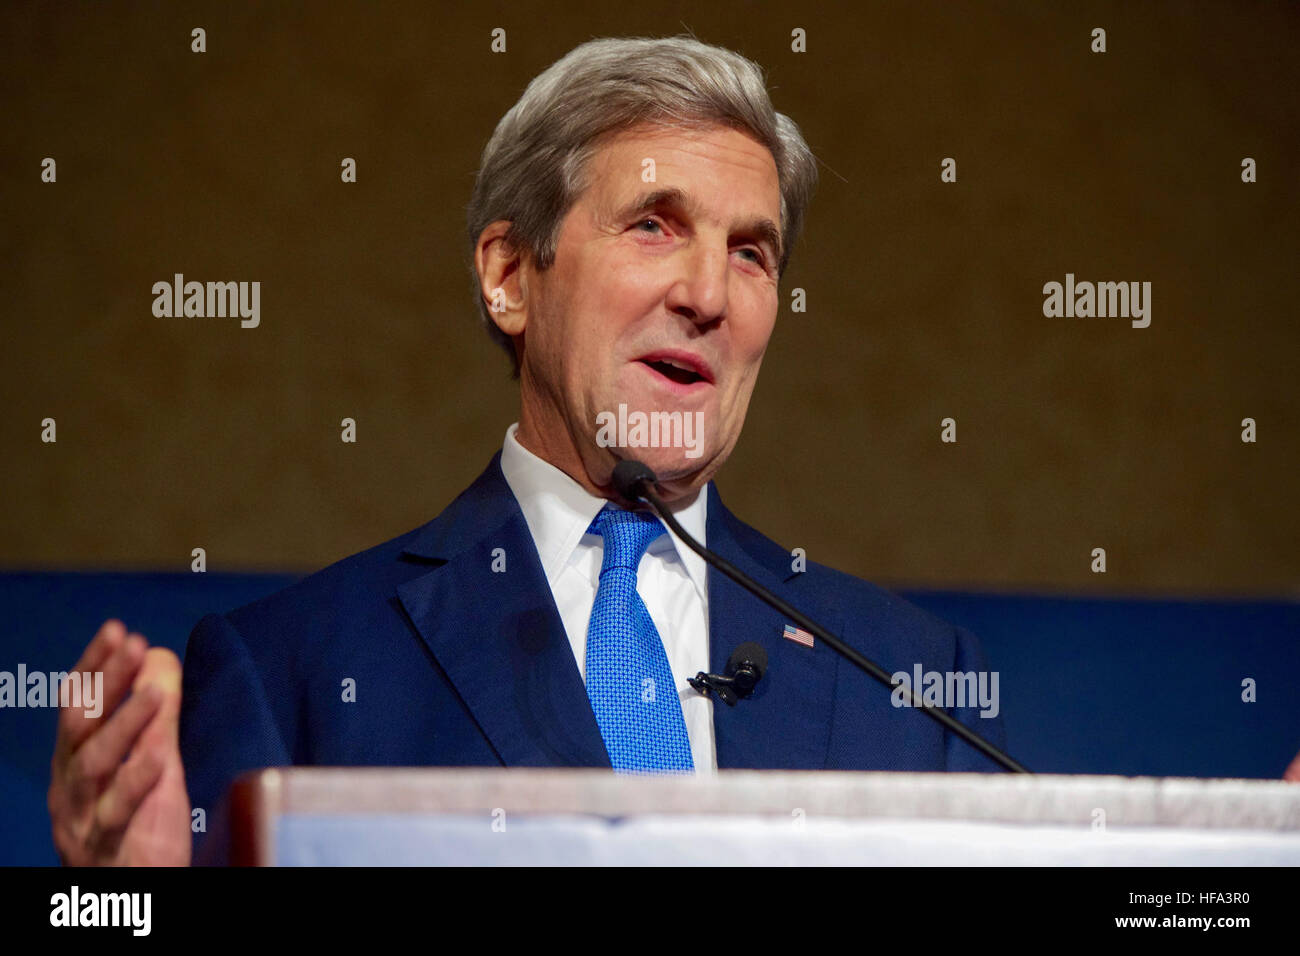 Stati Uniti Il segretario di Stato John Kerry offre un discorso di diplomazia oggi per oltre 1.500 soci e amici del Chicago Consiglio su questioni globali su ottobre 26, 2016 a Chicago Hilton Hotel di Chicago, Illinois. Foto Stock